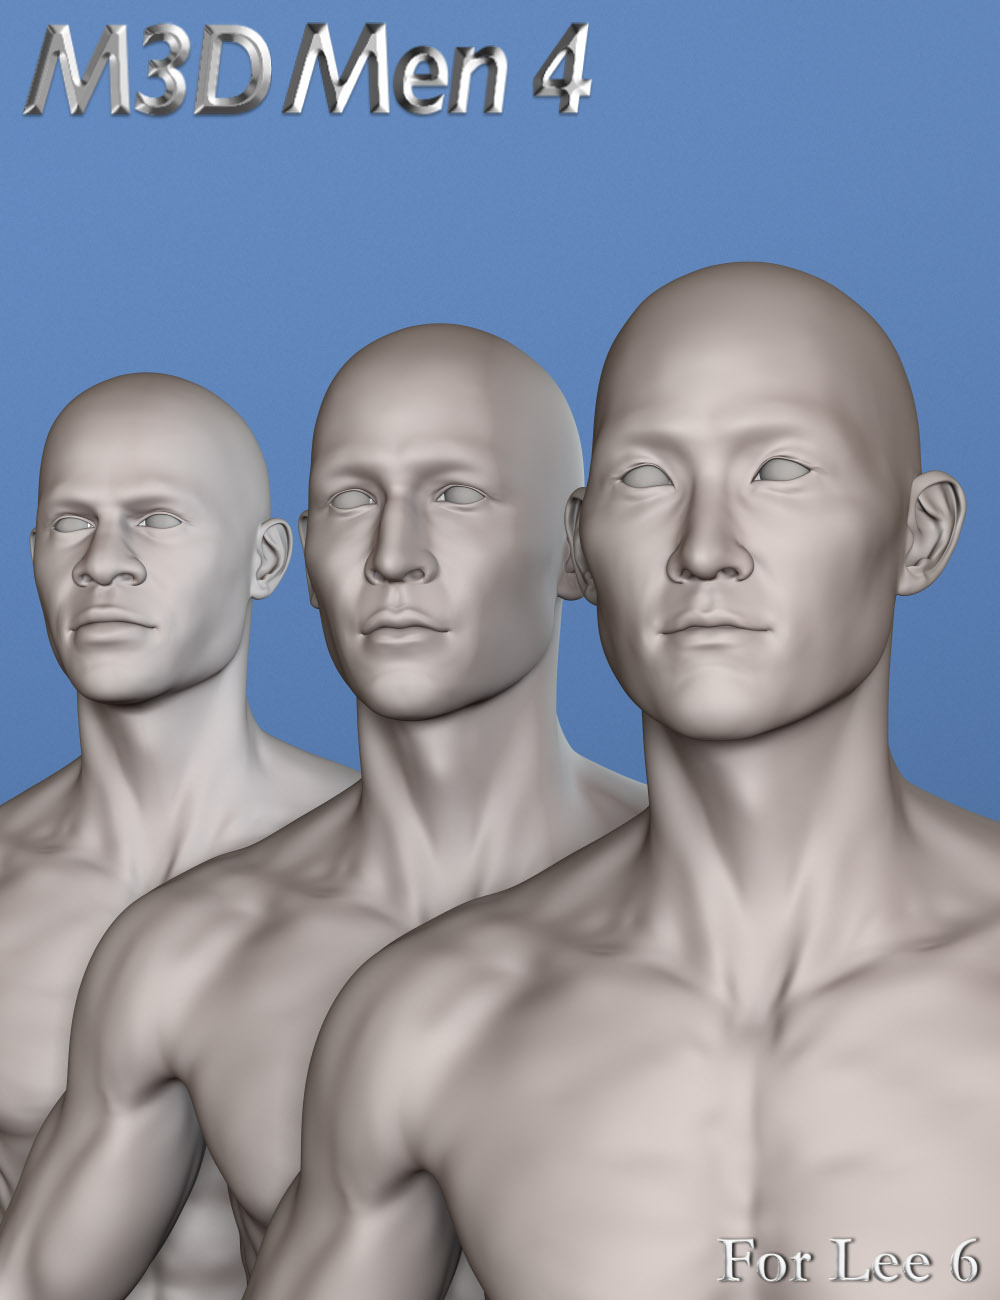 M3D Men 04 for Lee 6 by: Male-M3dia, 3D Models by Daz 3D